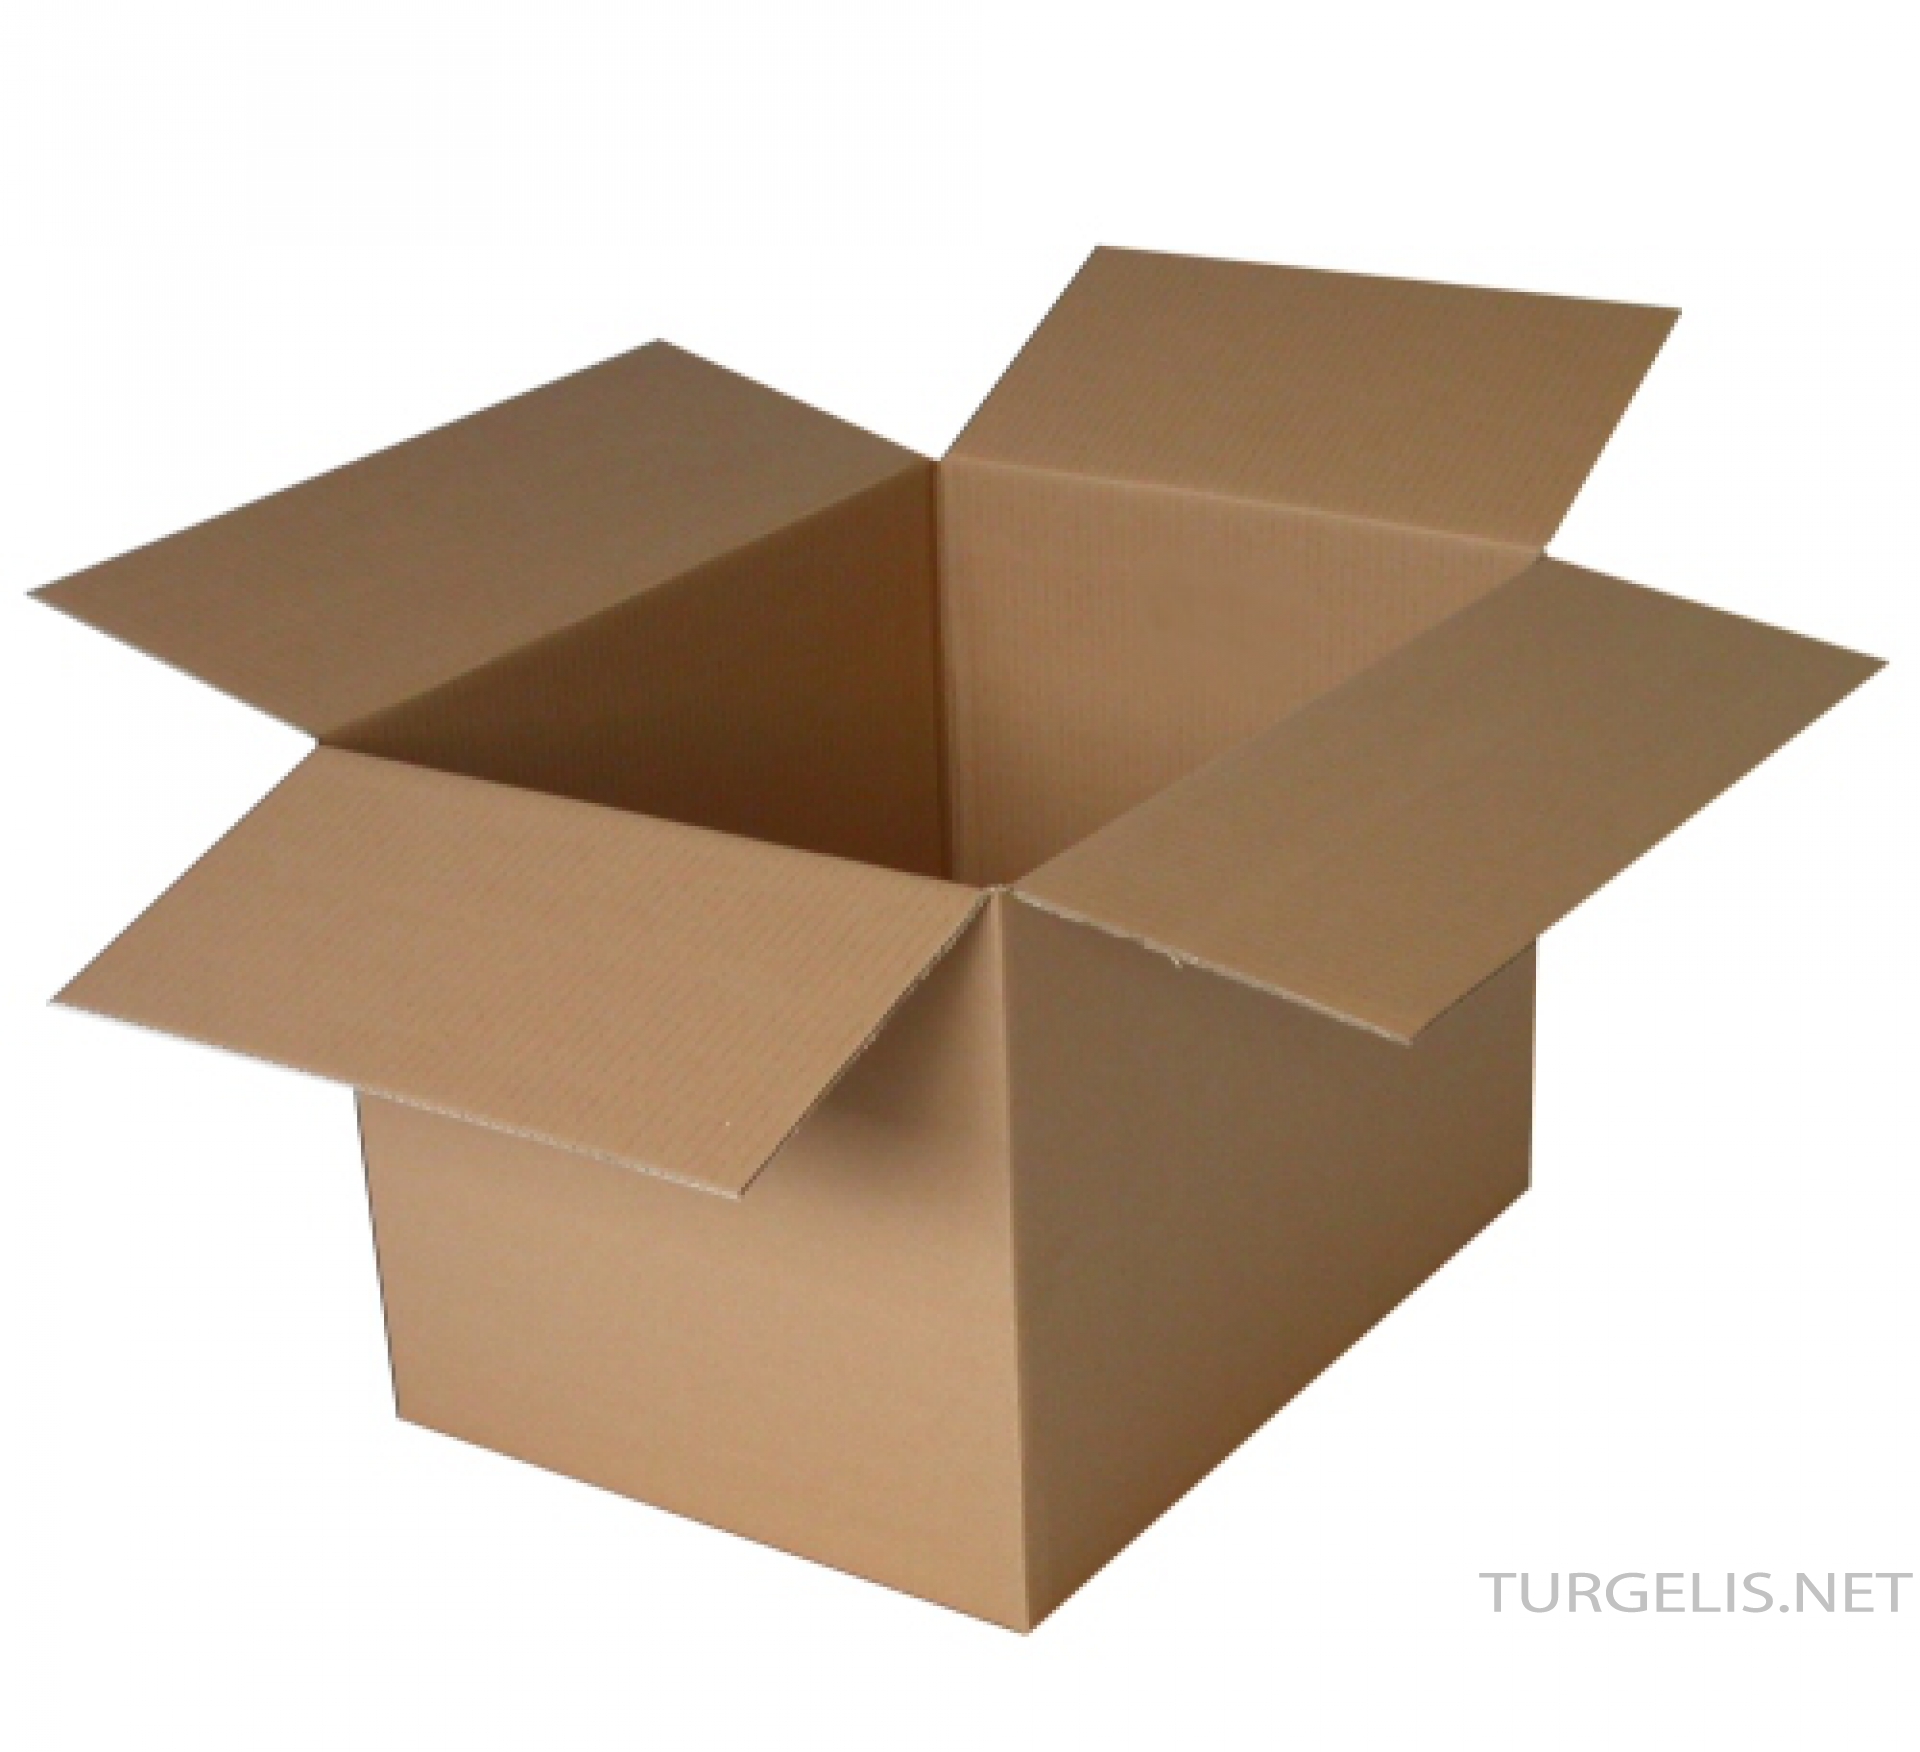 Kartoninės dėžės – gamyba, prekyba